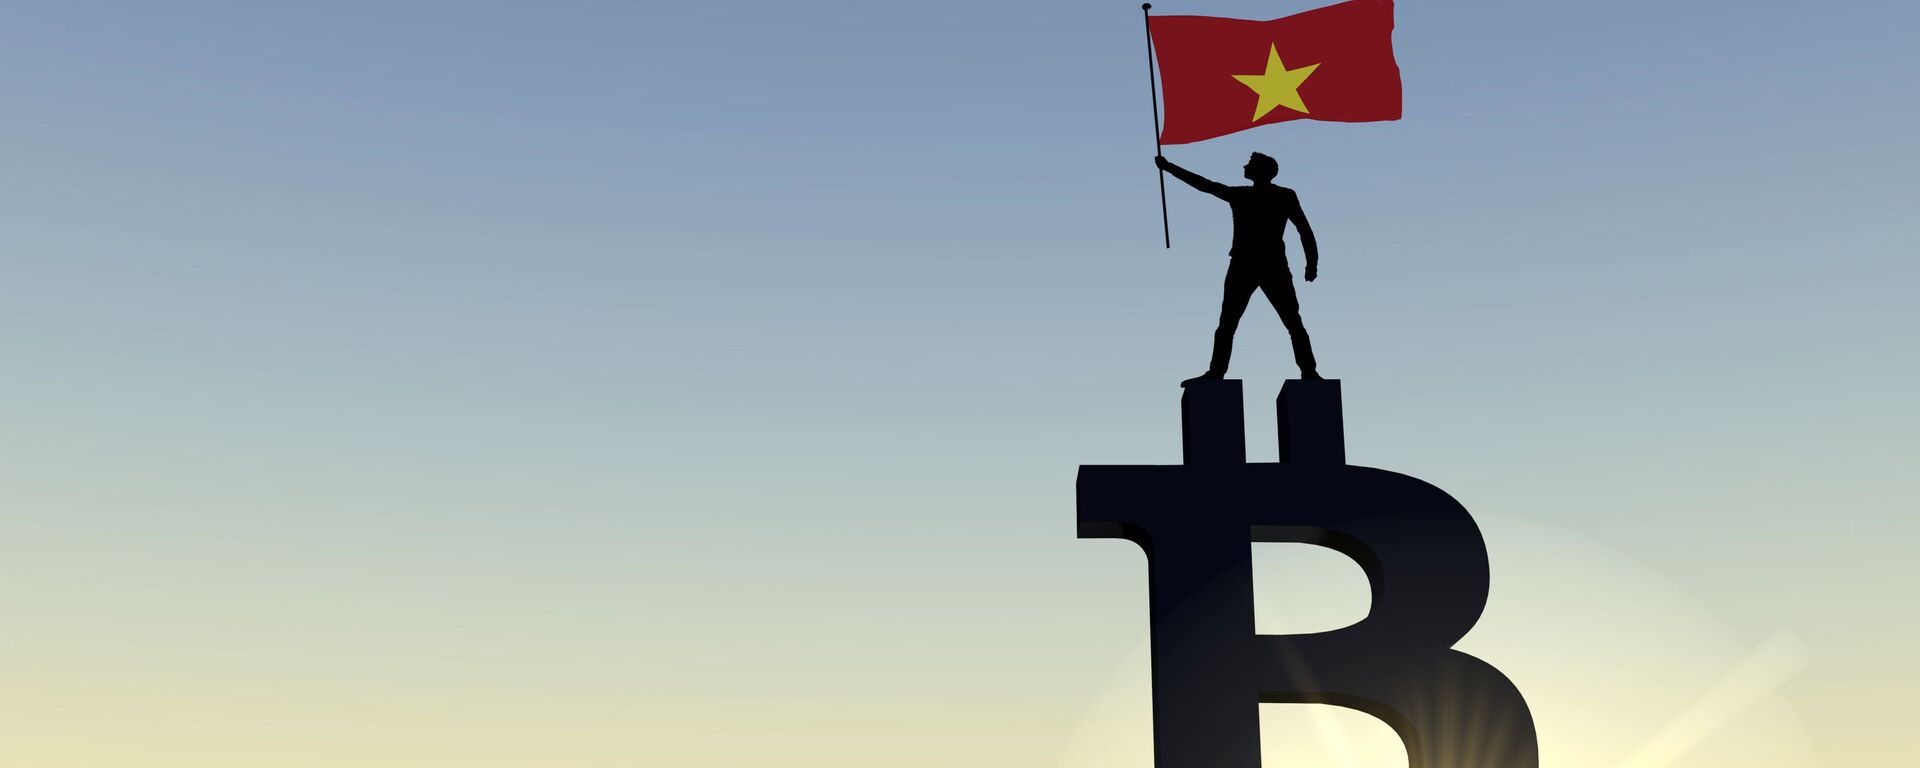 Người đàn ông vẫy cờ Việt Nam đứng trên đỉnh biểu tượng tiền điện tử bitcoin - Sputnik Việt Nam, 1920, 15.09.2022